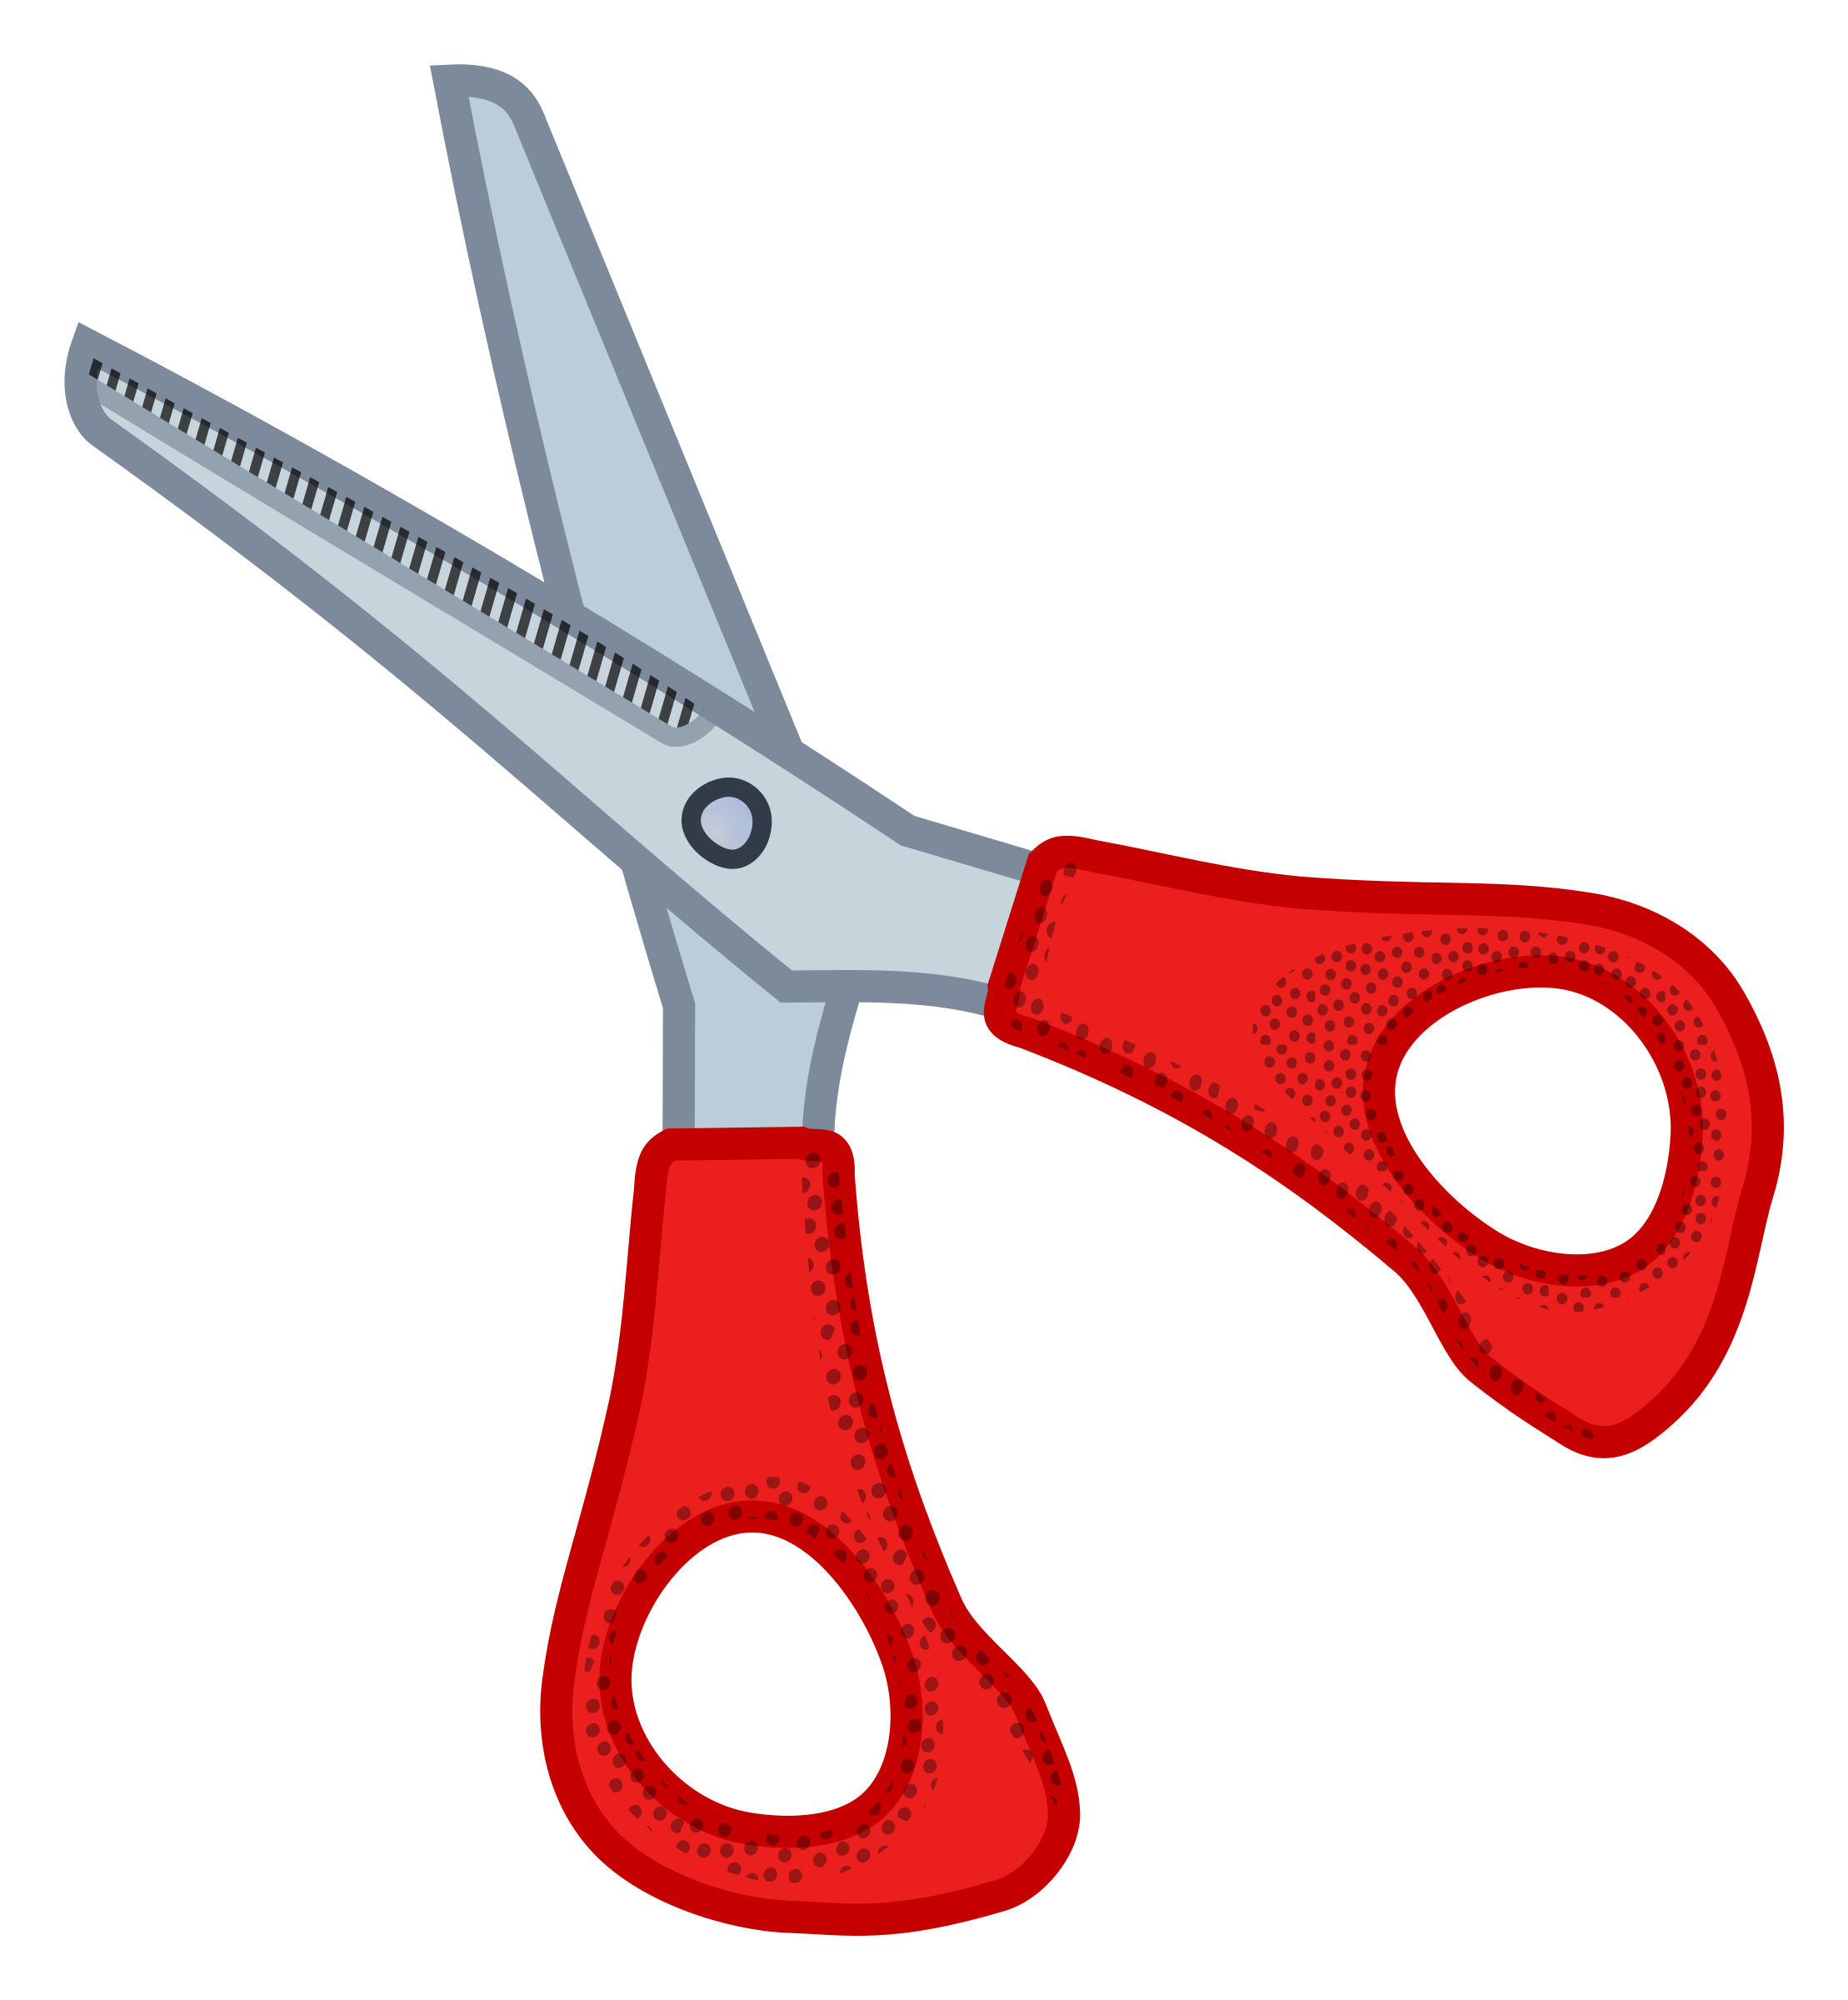 Clipart scissors free